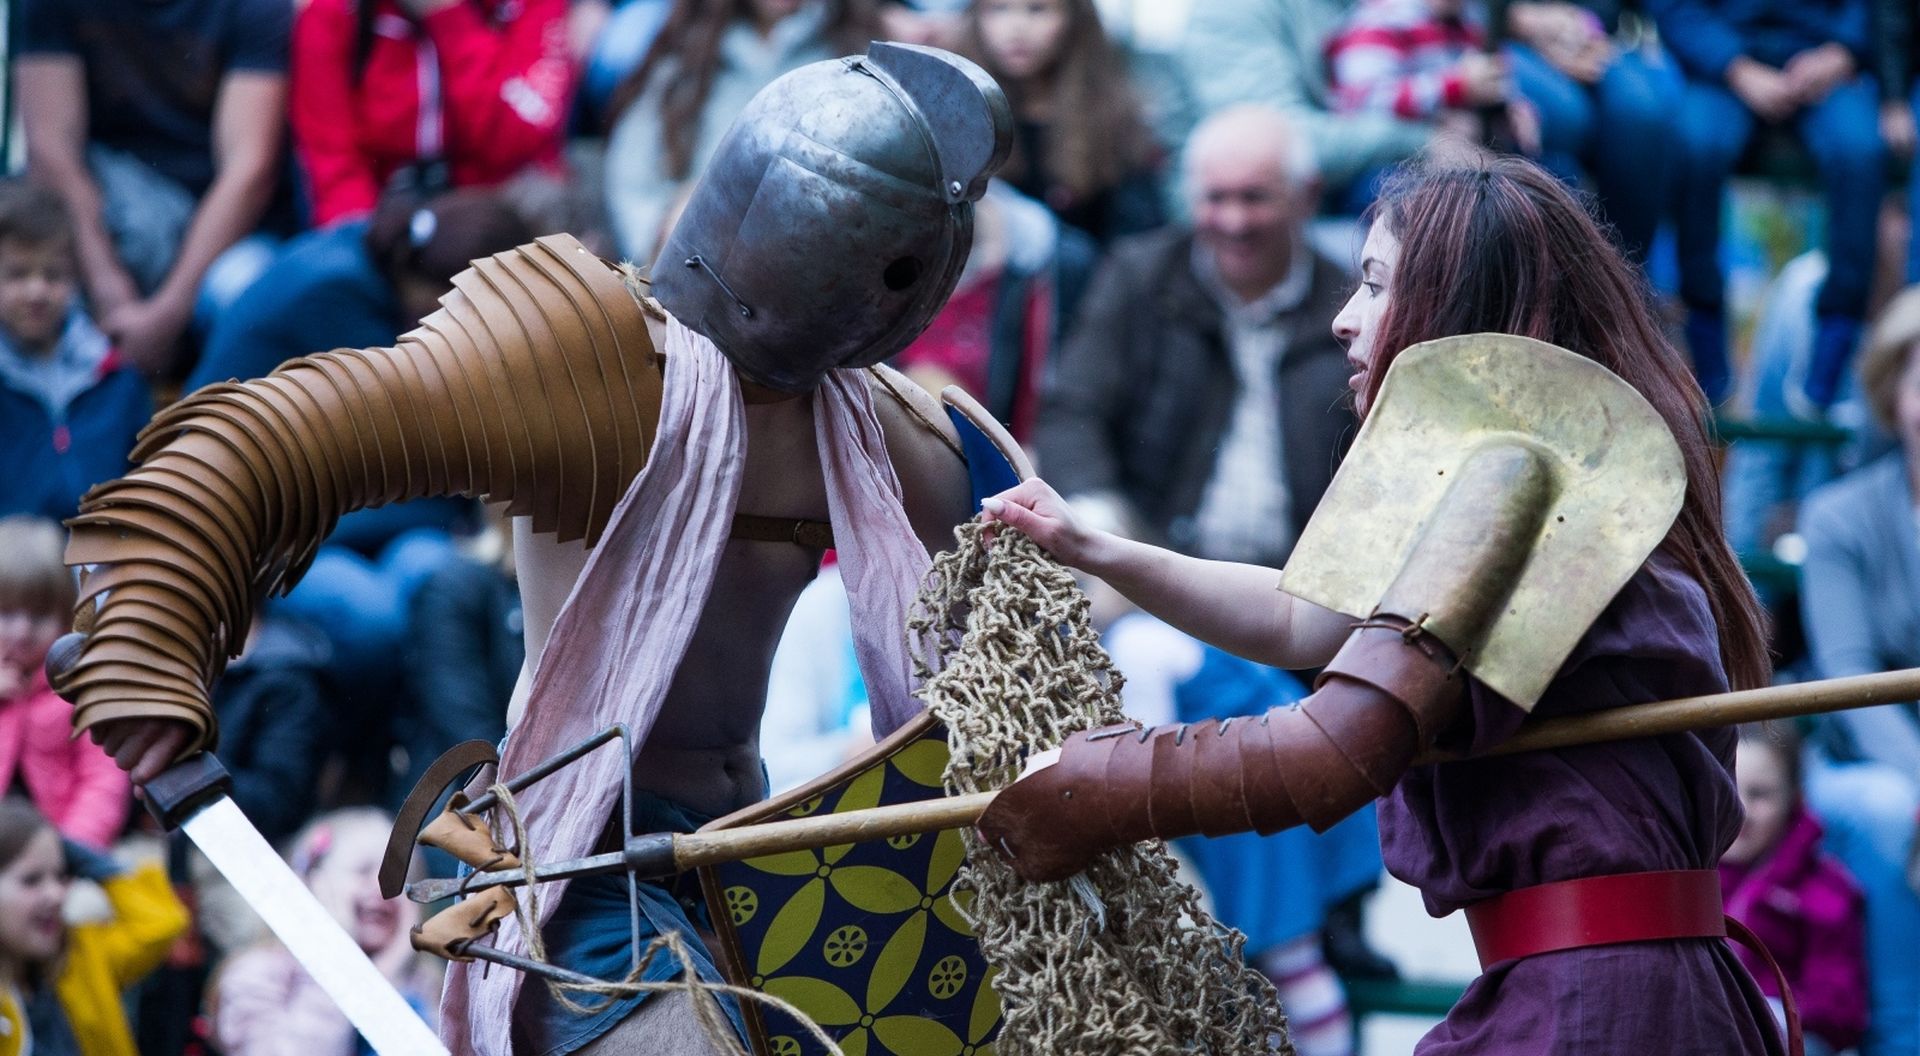 31.05.2019., Vinkovci - Povodom odrzavanja manifestacije 7 Rimski dani u Vinkovcima odrzane su borbe gladijatora koje su privukle velik broj posjetitelja. Photo: Davor Javorovic/PIXSELL